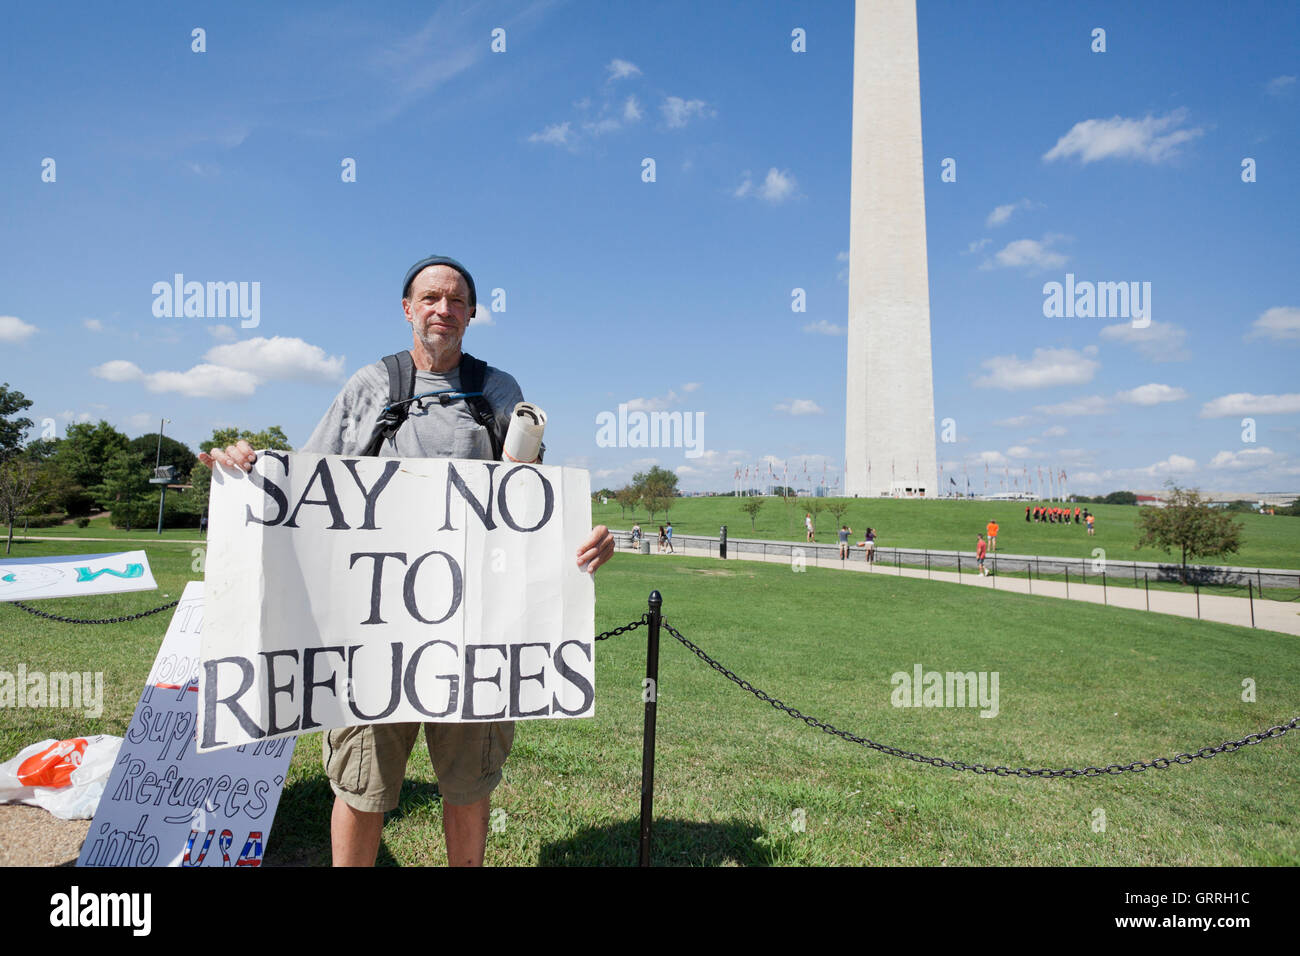 Los manifestantes contra refugiados en los EE.UU., Washington, DC, EE.UU. Foto de stock